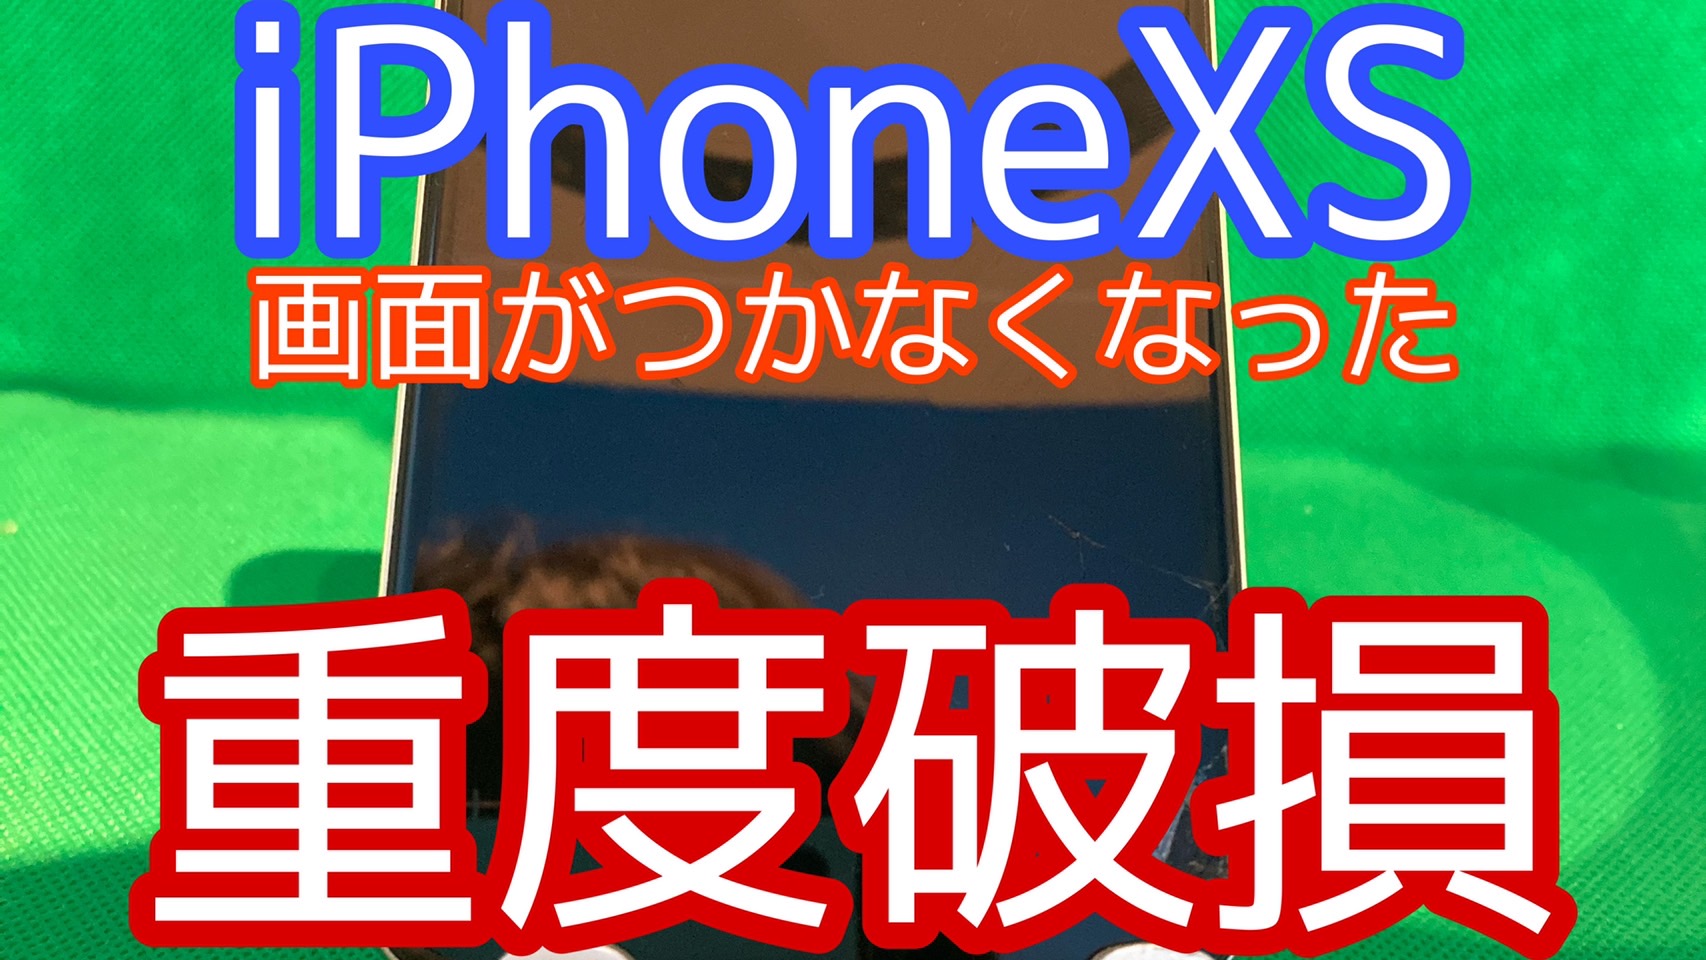 iPhoneXSアイキャッチ画像